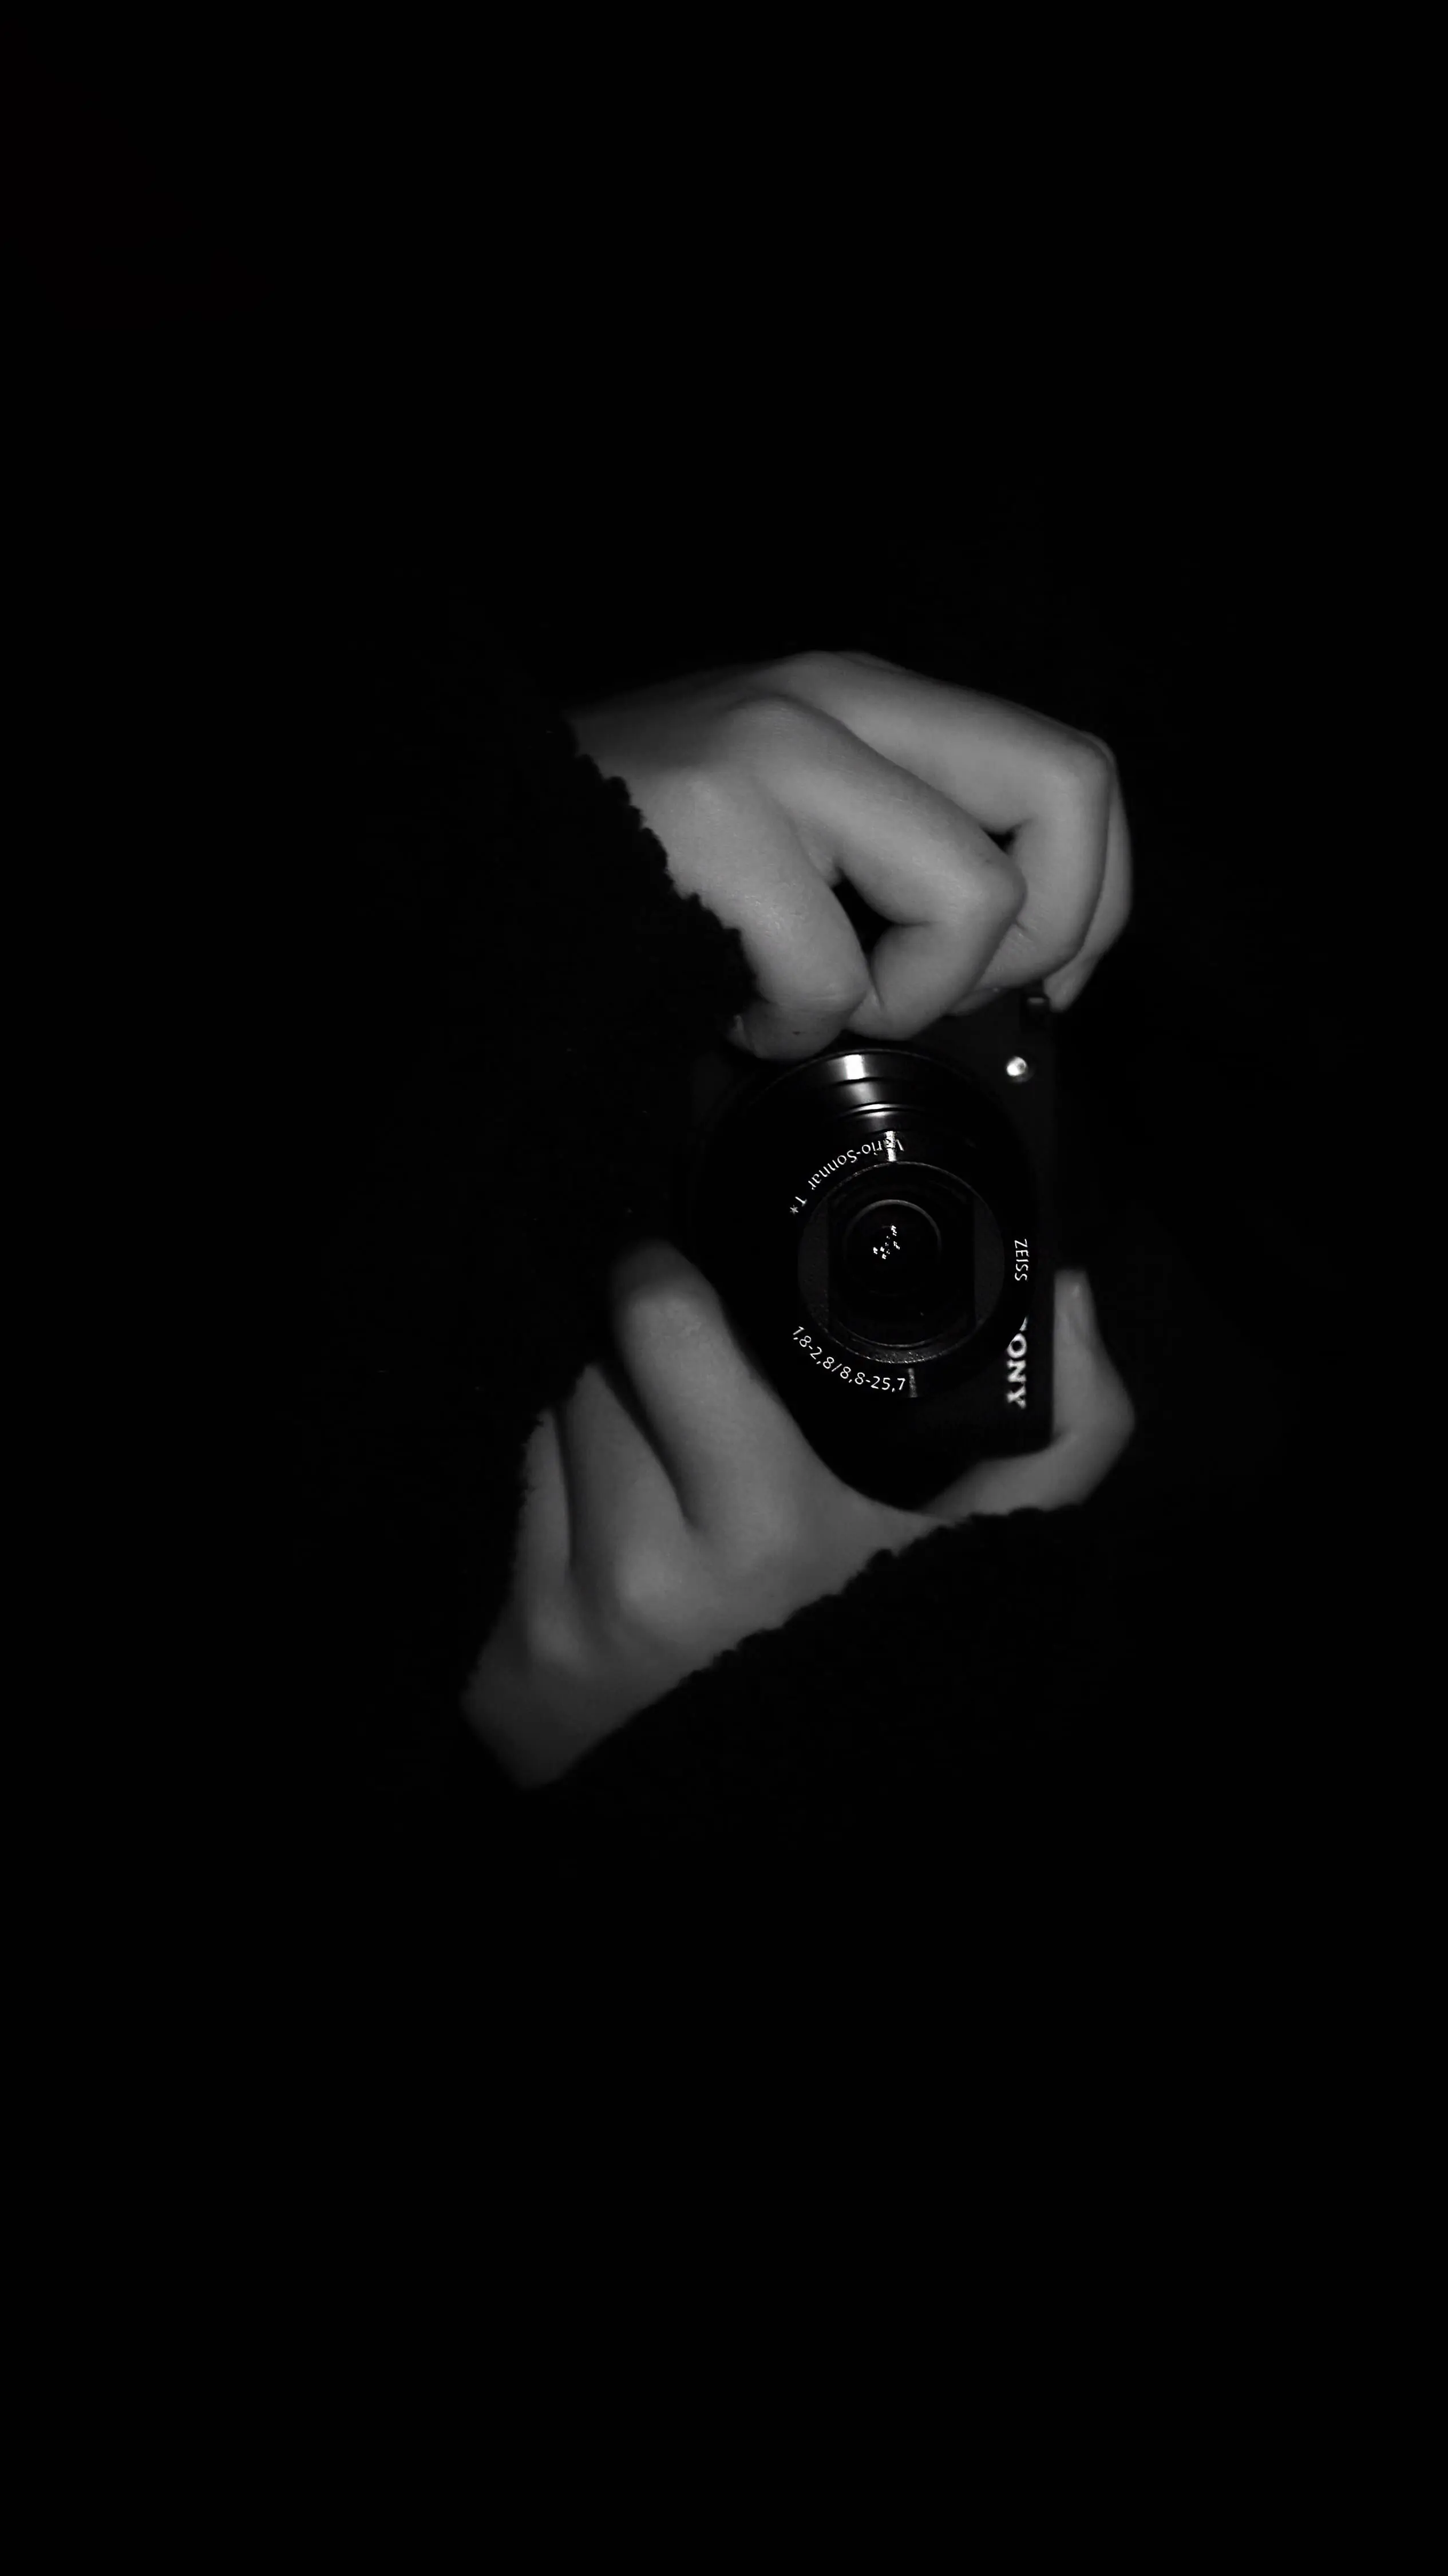 كاميرا تصوير في خلفية سوداء